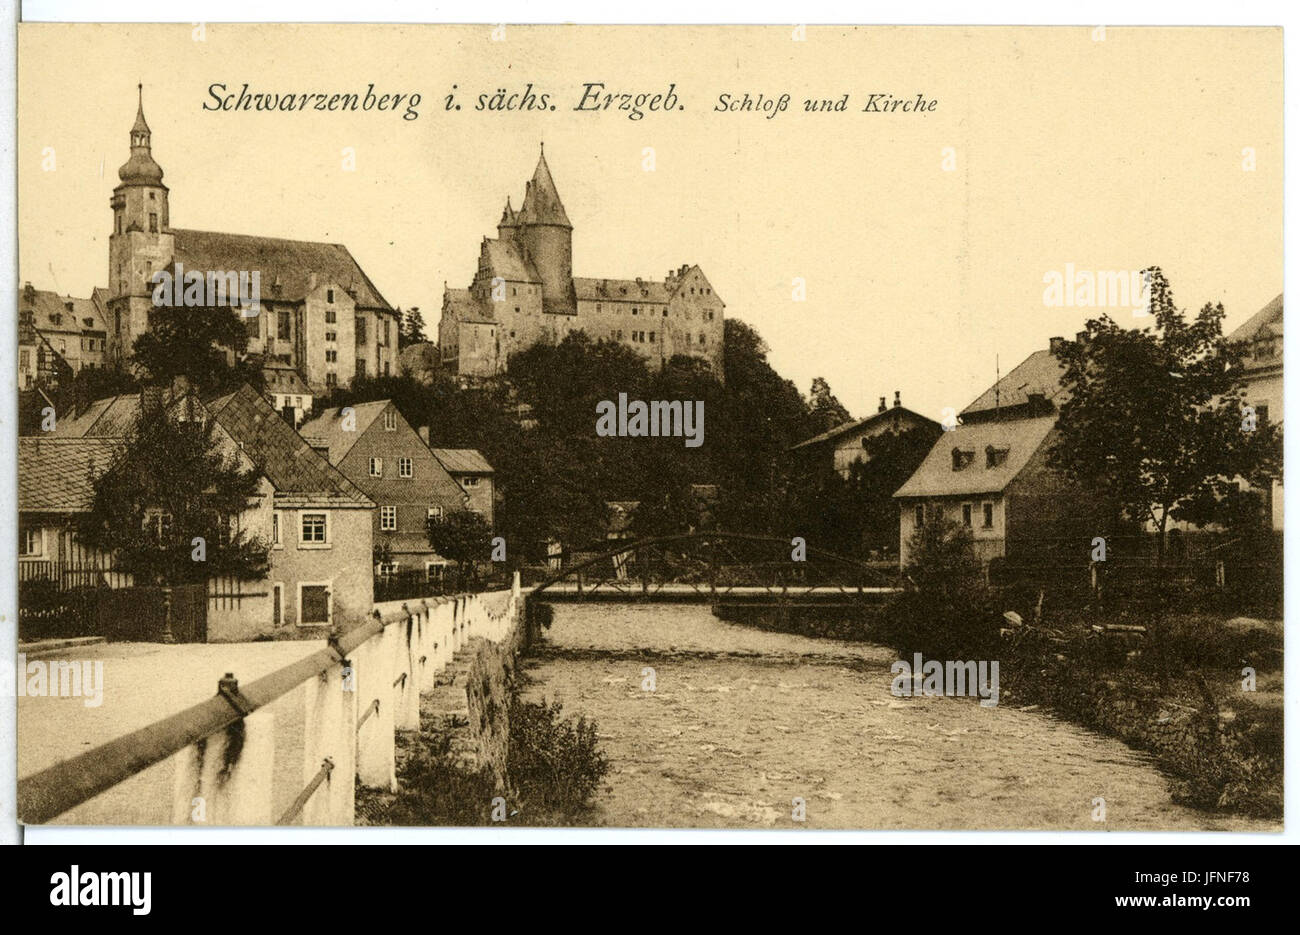 07407-Schwarzenberg-1906-Blick von der Uferstraße zum Schloß-Brück & Sohn Kunstverlag Stock Photo